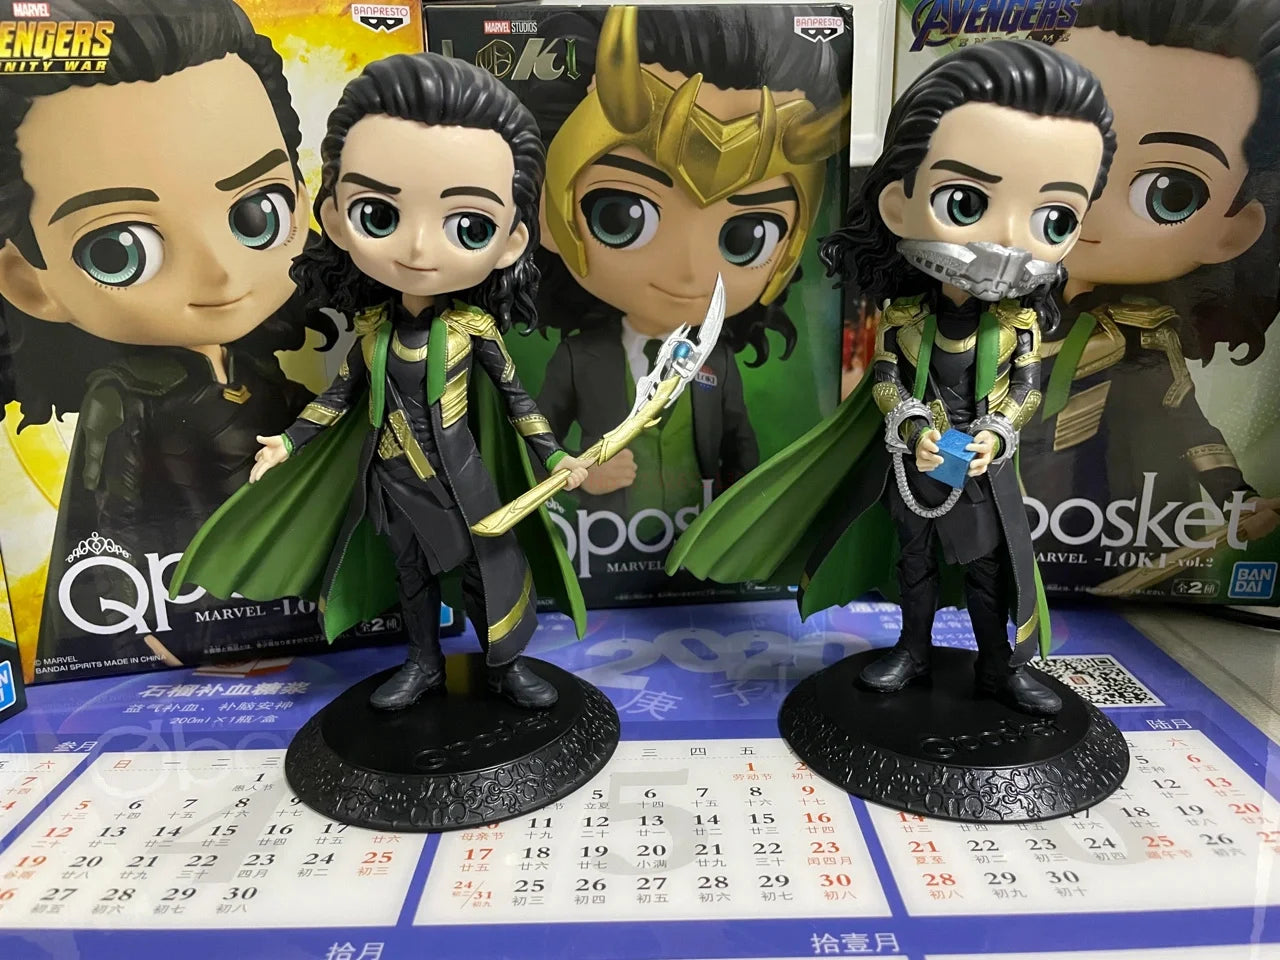 Children Loki Anime Figure Action Figure Toys